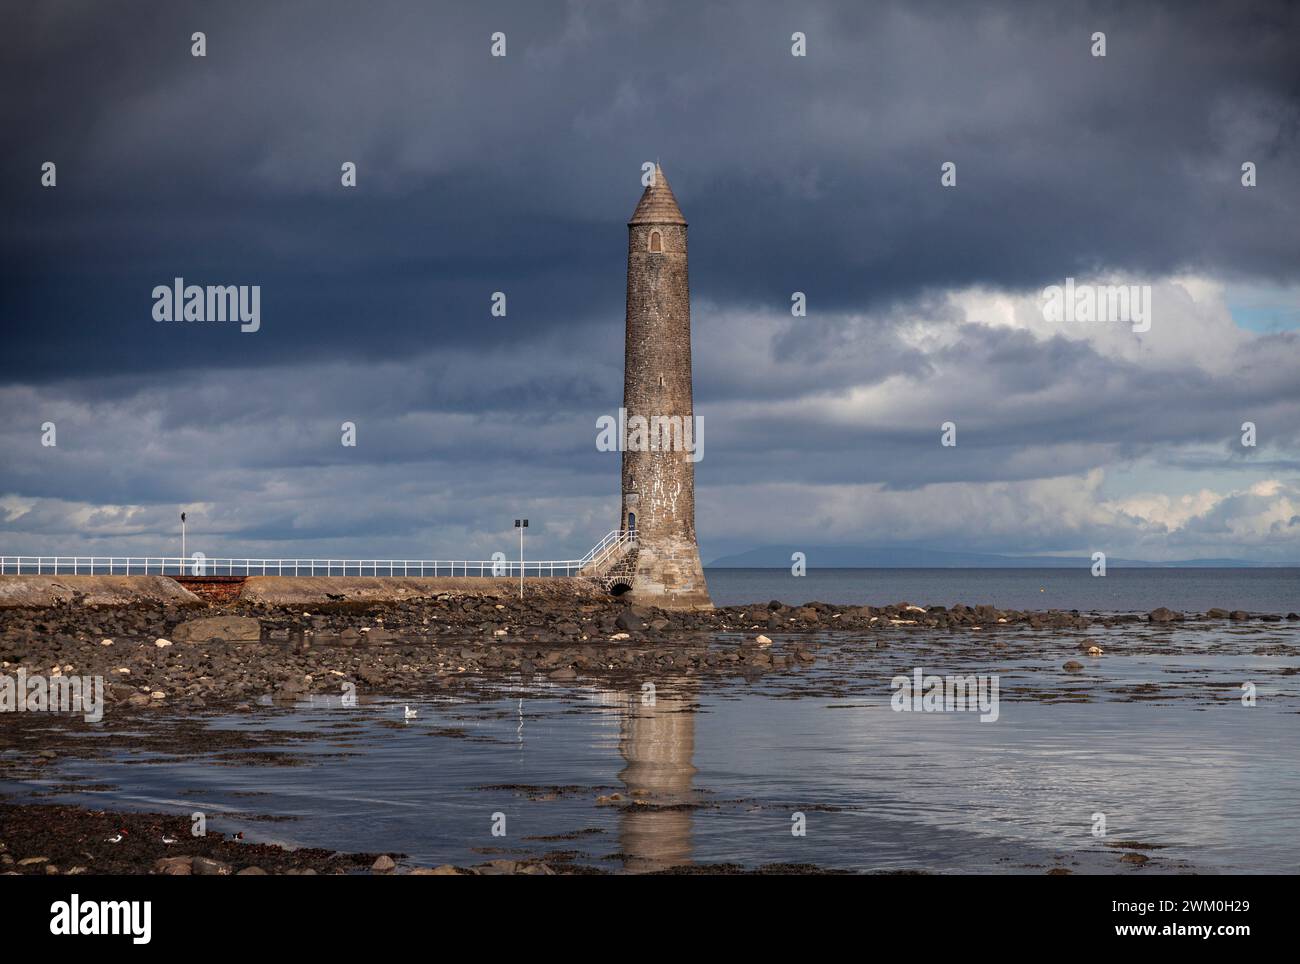 Le mémorial de la chaîne une tour ronde en granit construite à l'entrée de Larne Lough dans le comté d'Antrim, en Irlande du Nord, construite en 1888. Banque D'Images